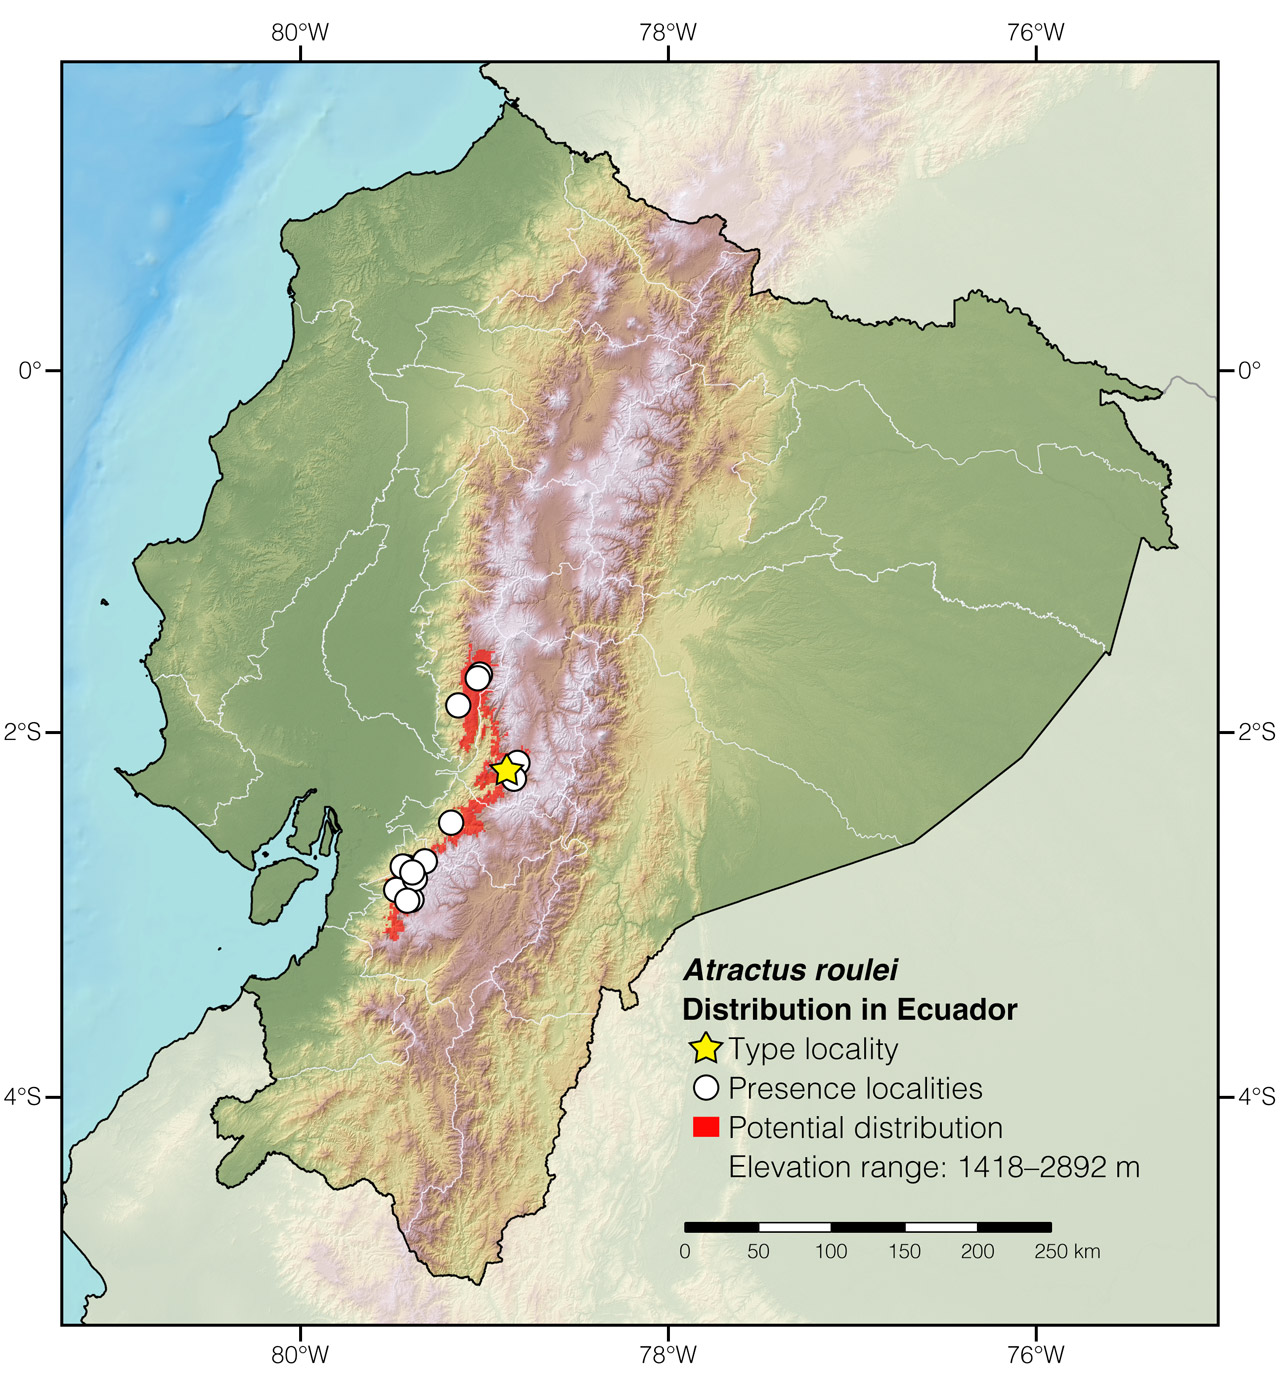 Distribution of Atractus roulei in Ecuador